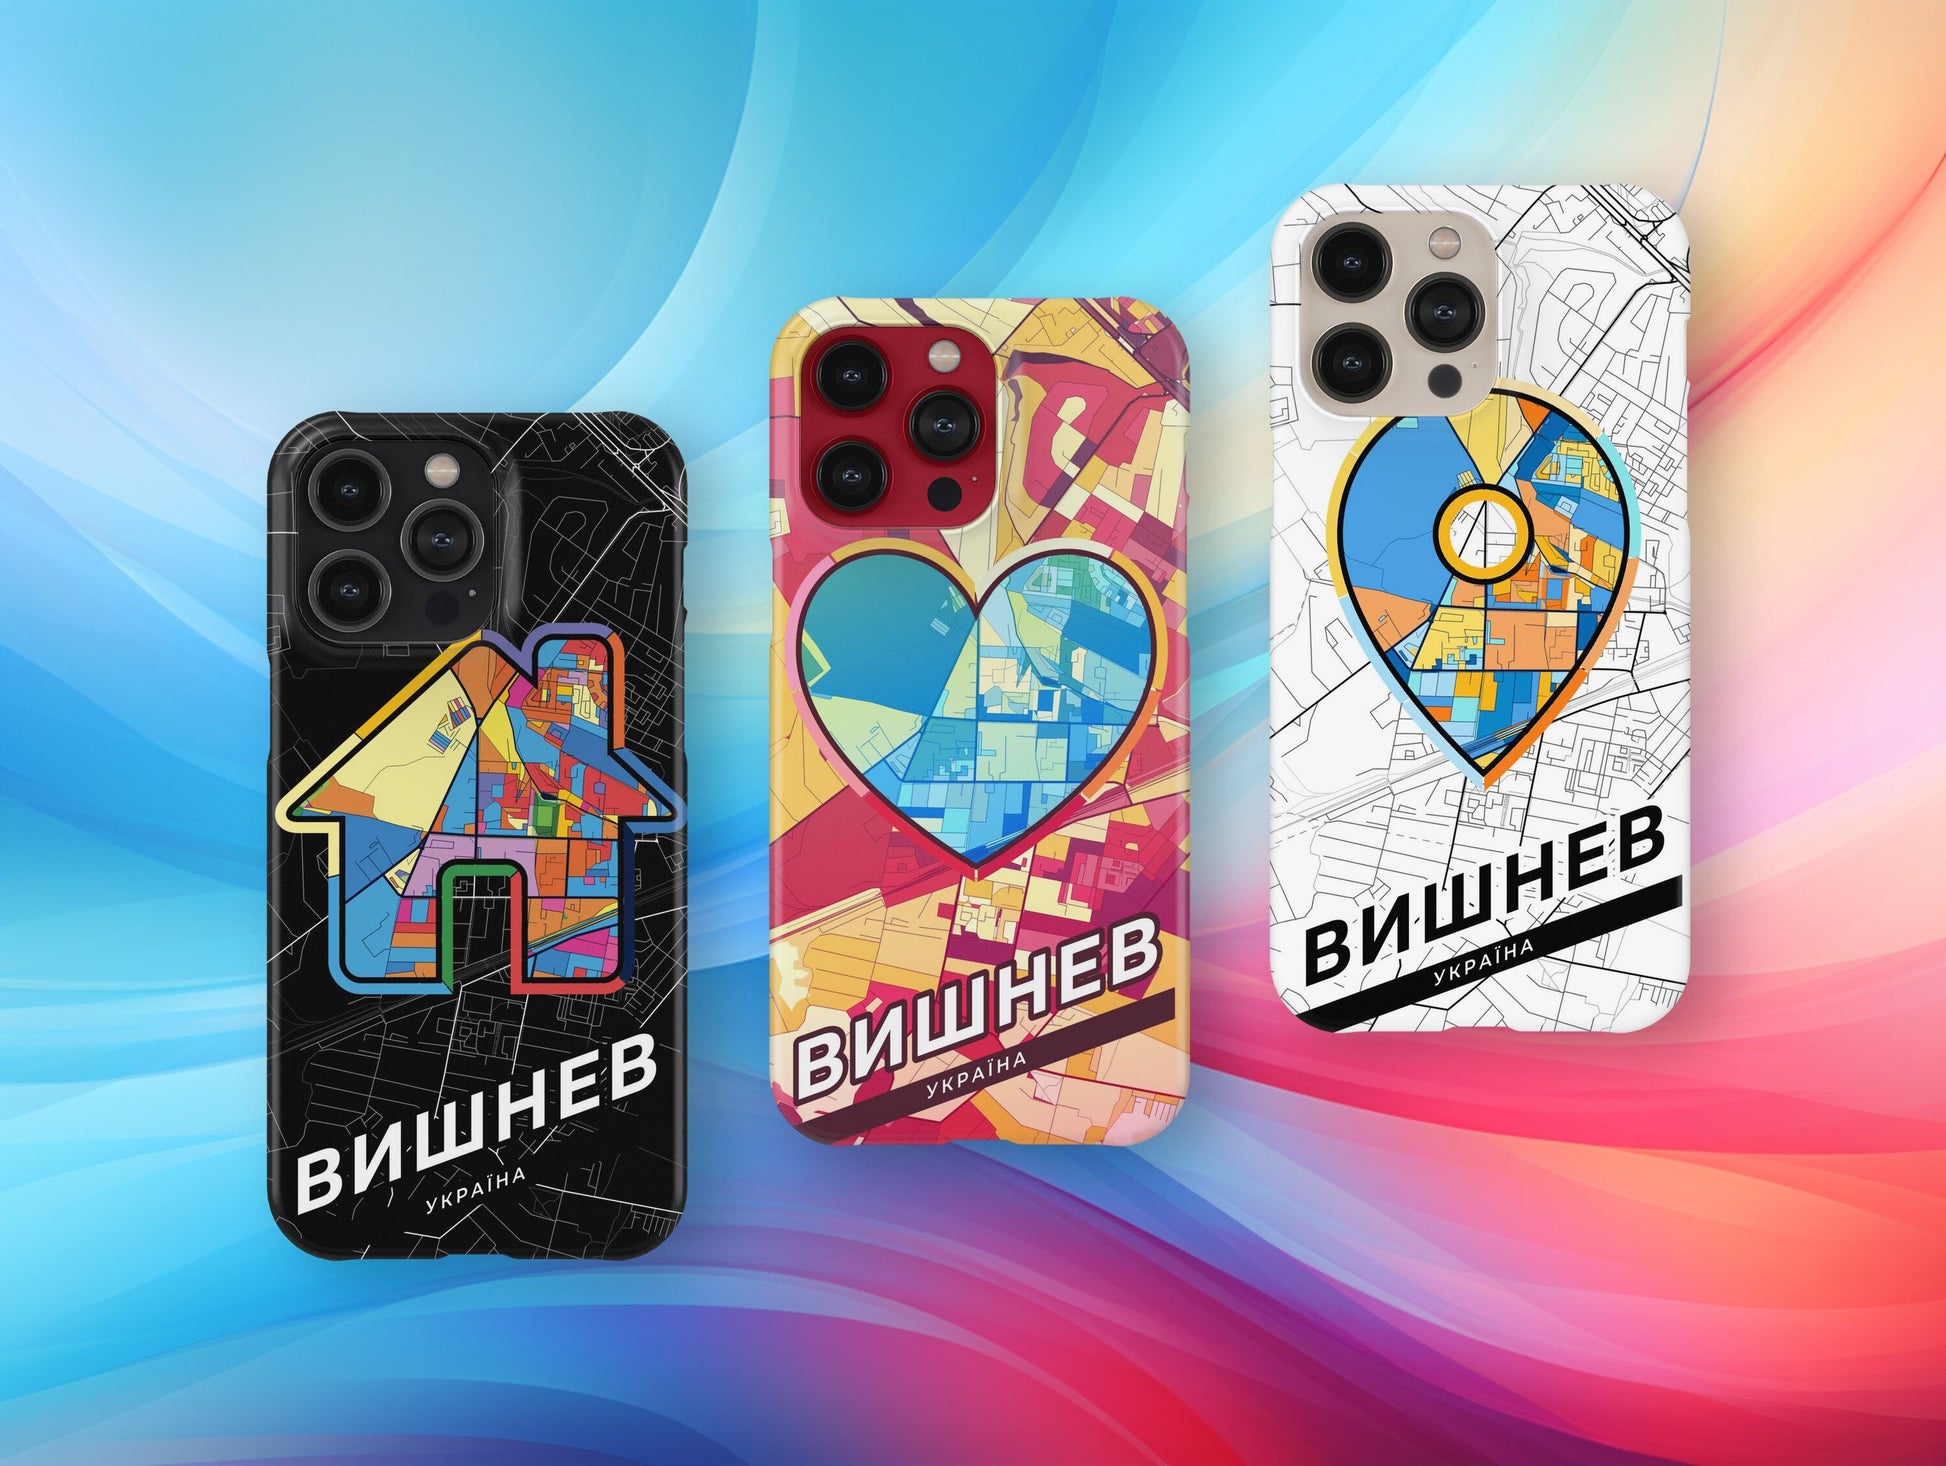 Vyshneve Ukraine slim phone case with colorful icon